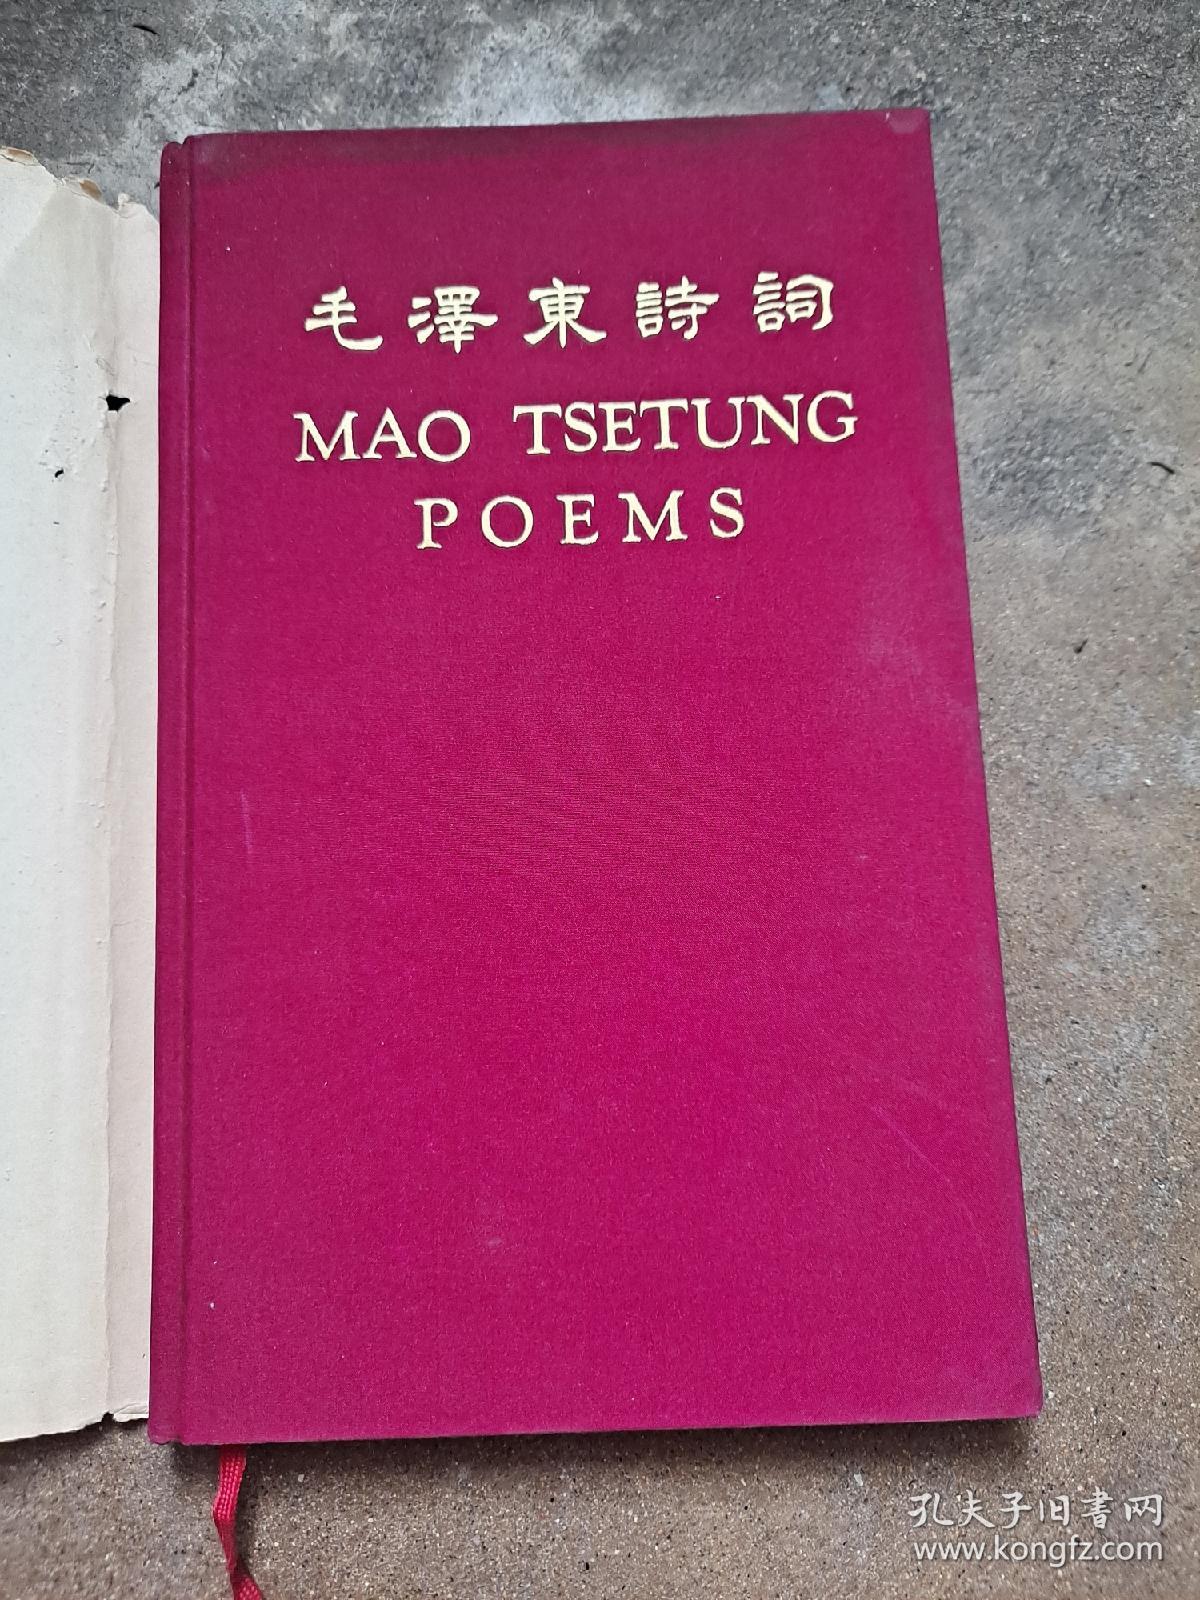 毛泽东诗词 MAO TSETUNG POEMS 英文版 (有毛照片和一大幅手书） 精装 外文出版社